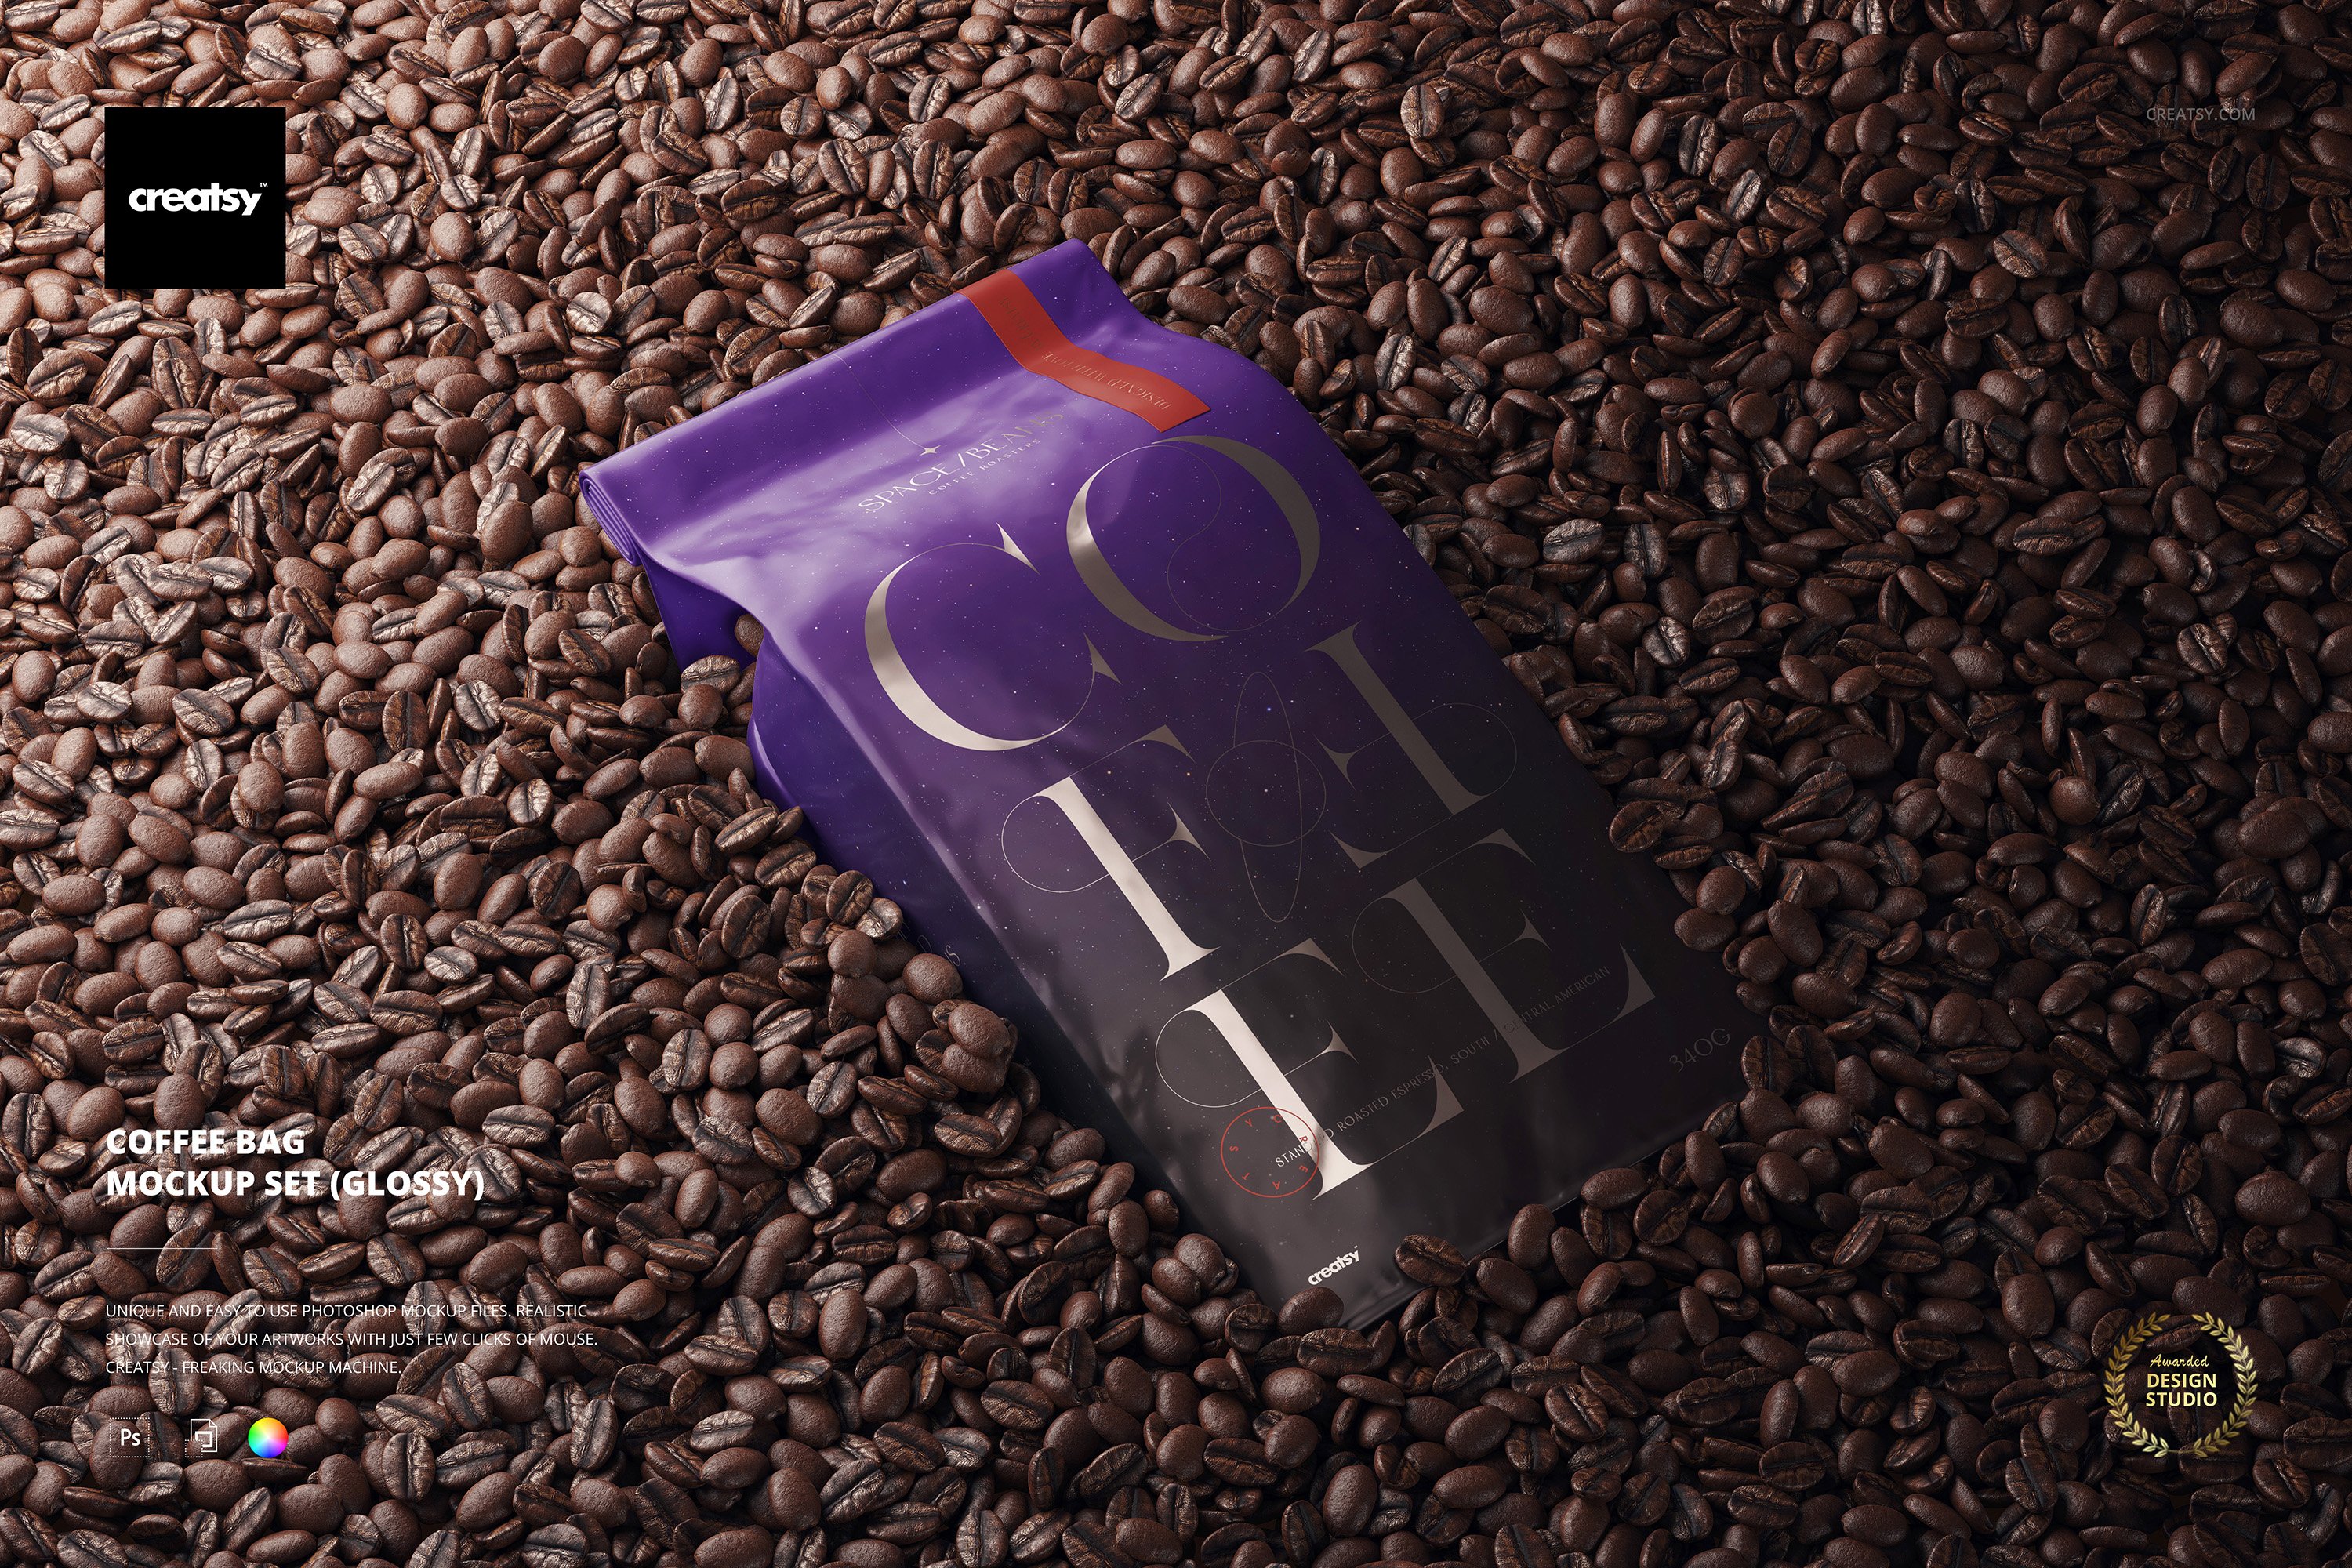 Coffee Bag Mockup Set (glossy) cover image.